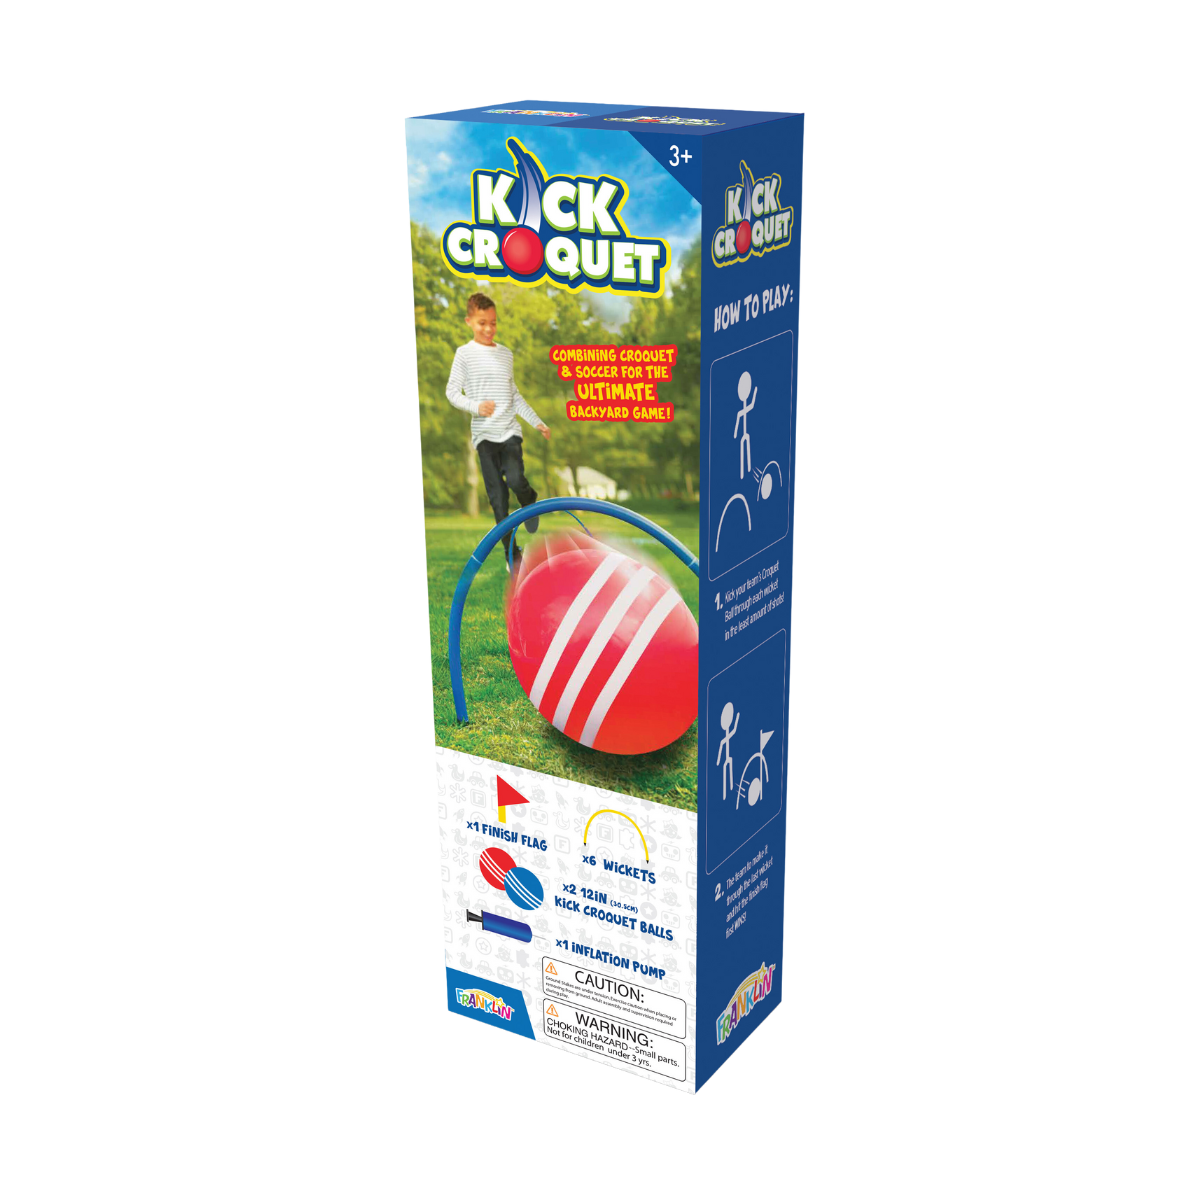 Kick Croquet